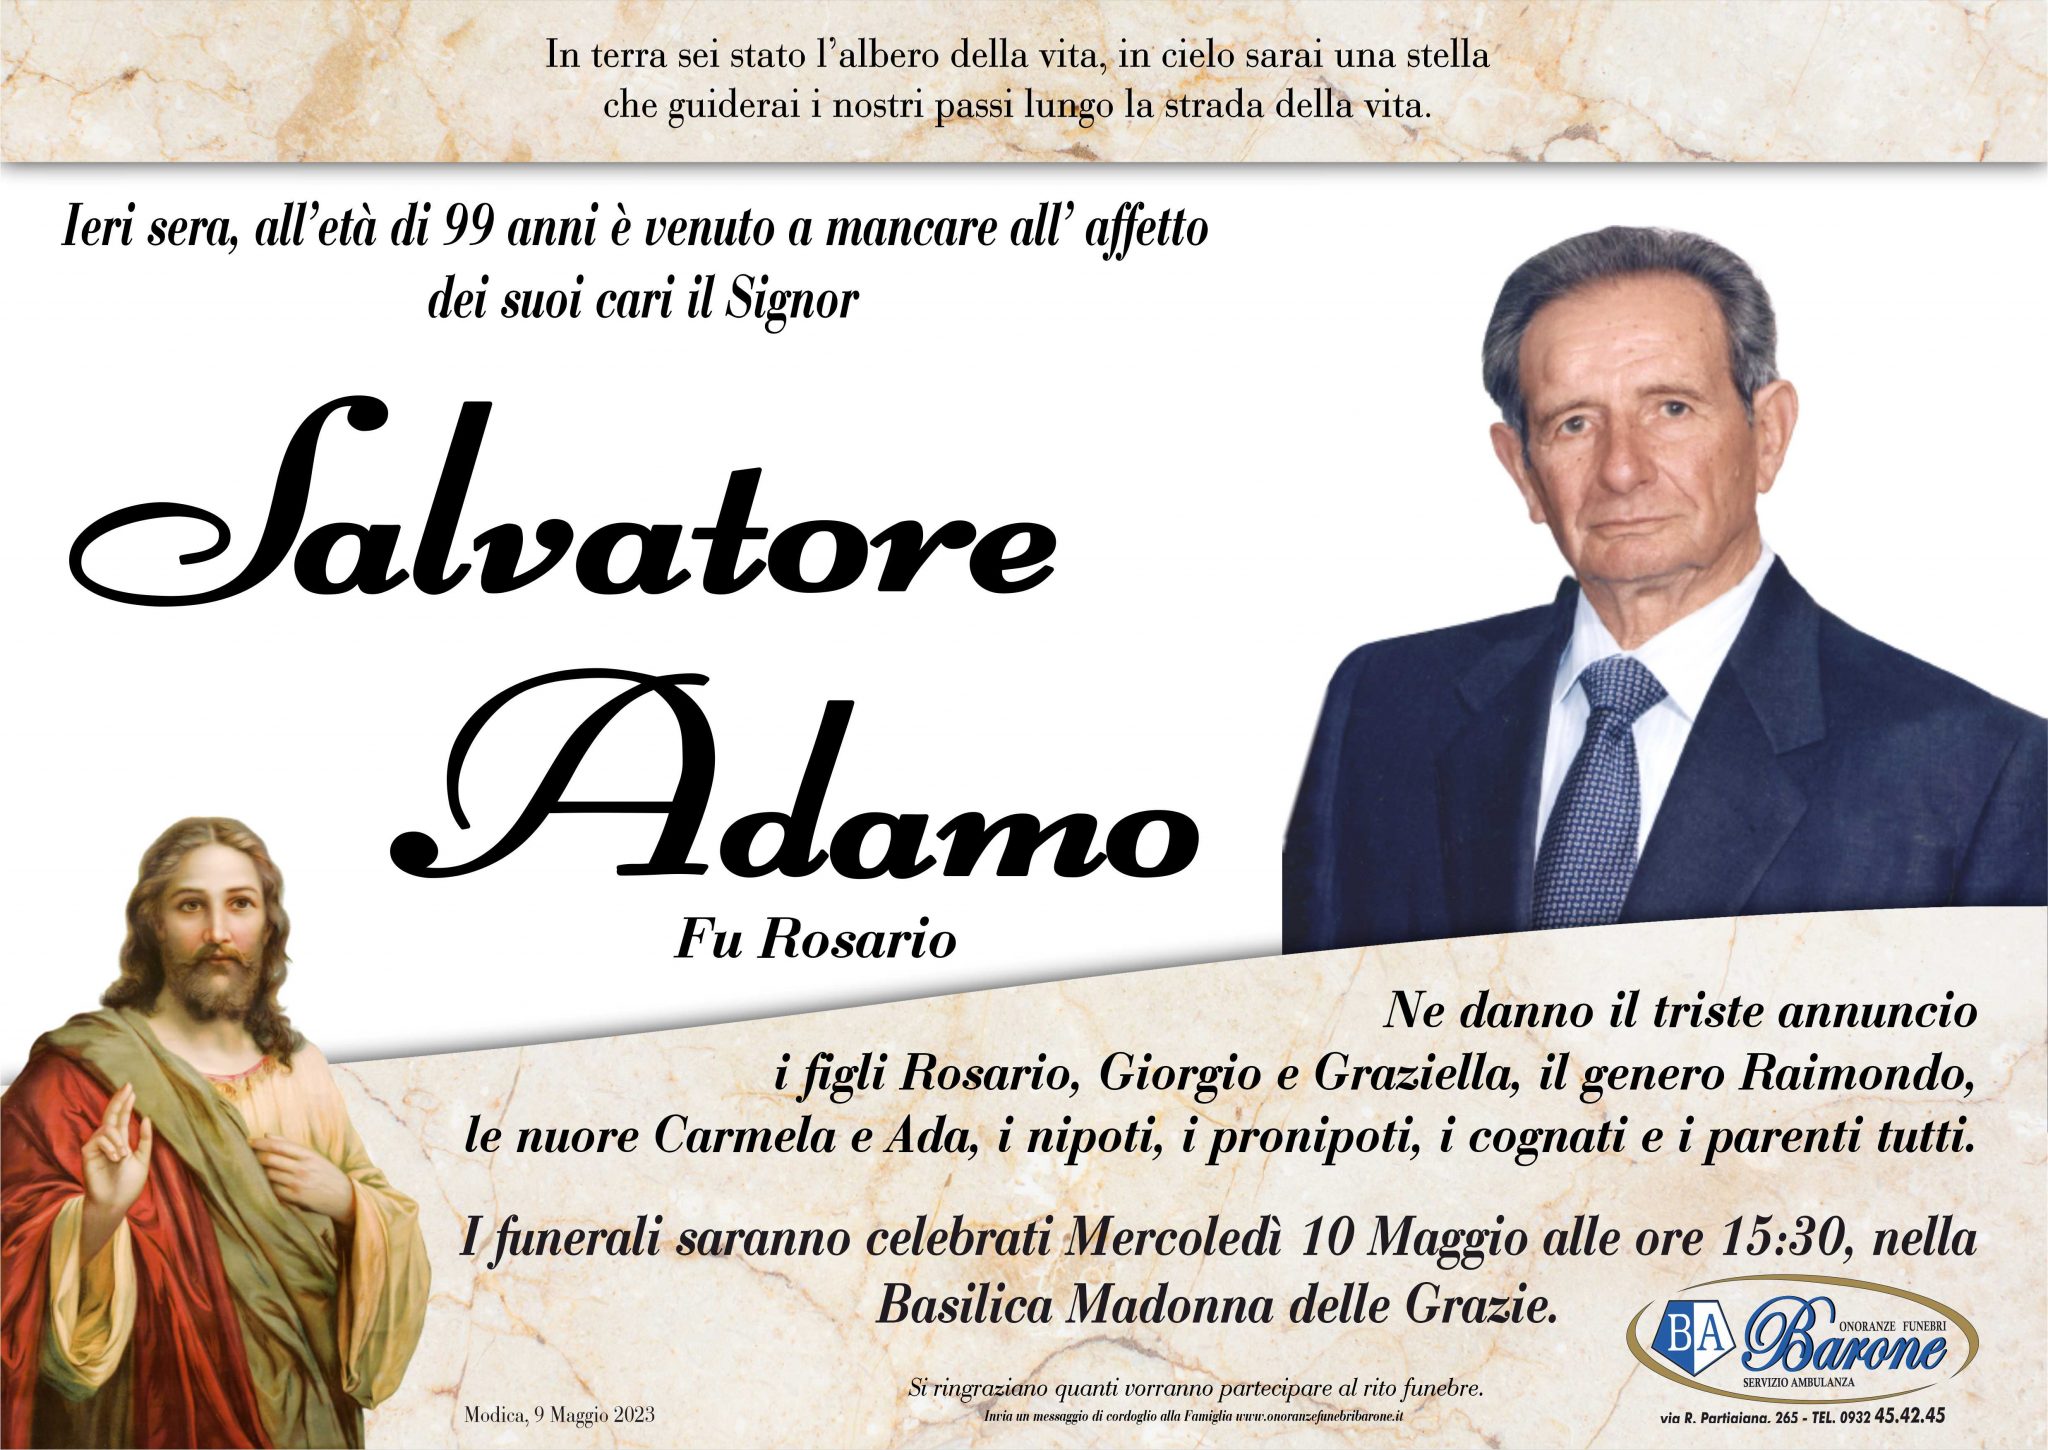 Salvatore Adamo - Onoranze Funebri Barone